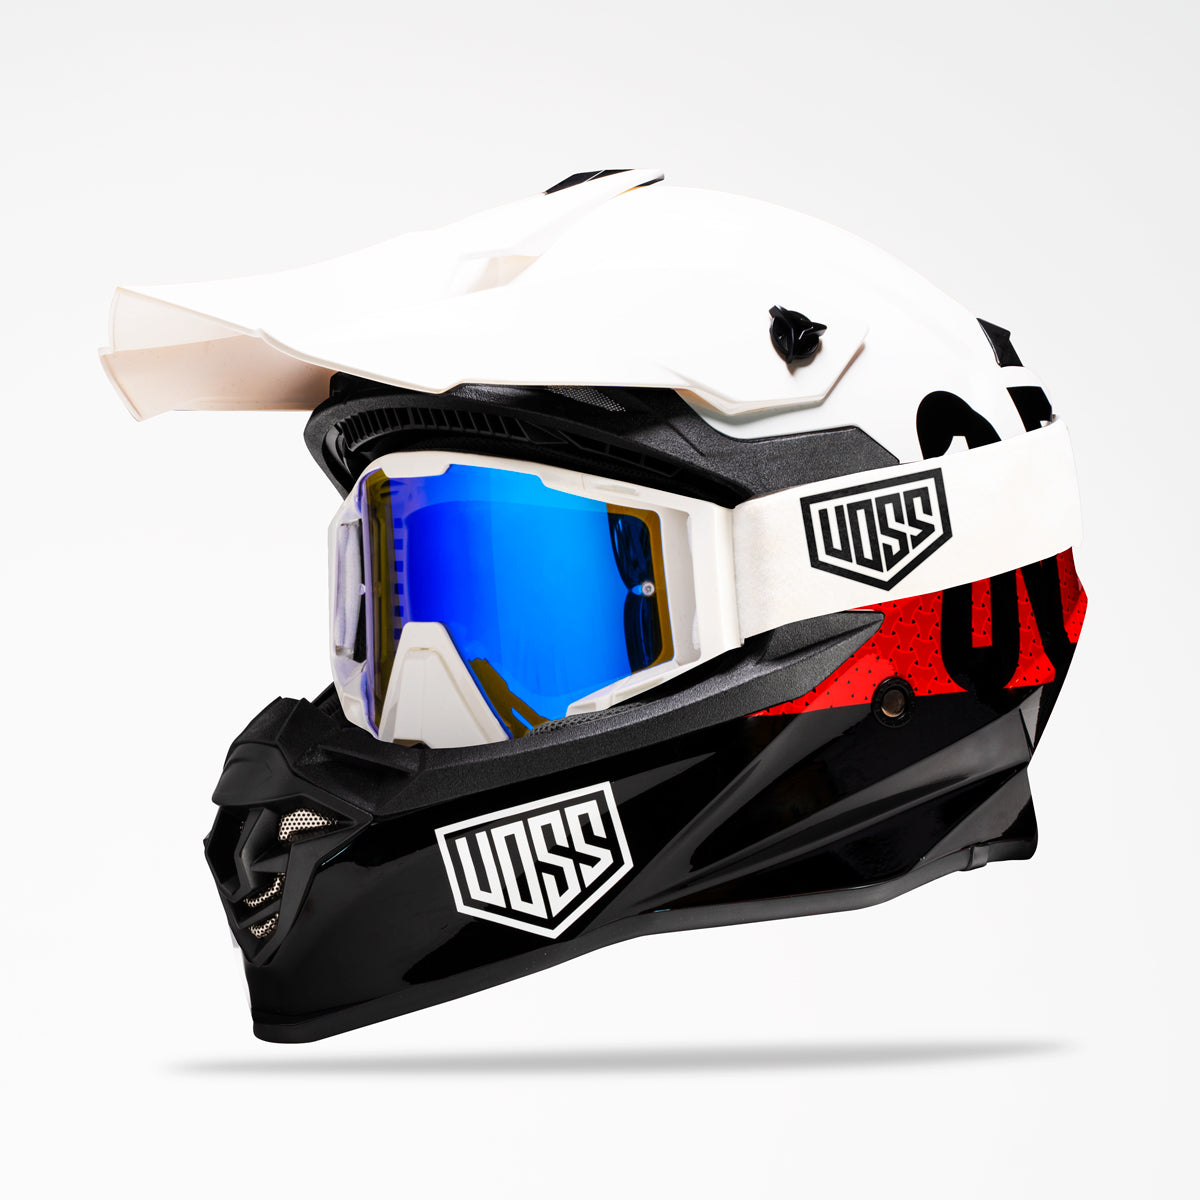 Voss 801 X1 Pro Dirt Crux Helmet